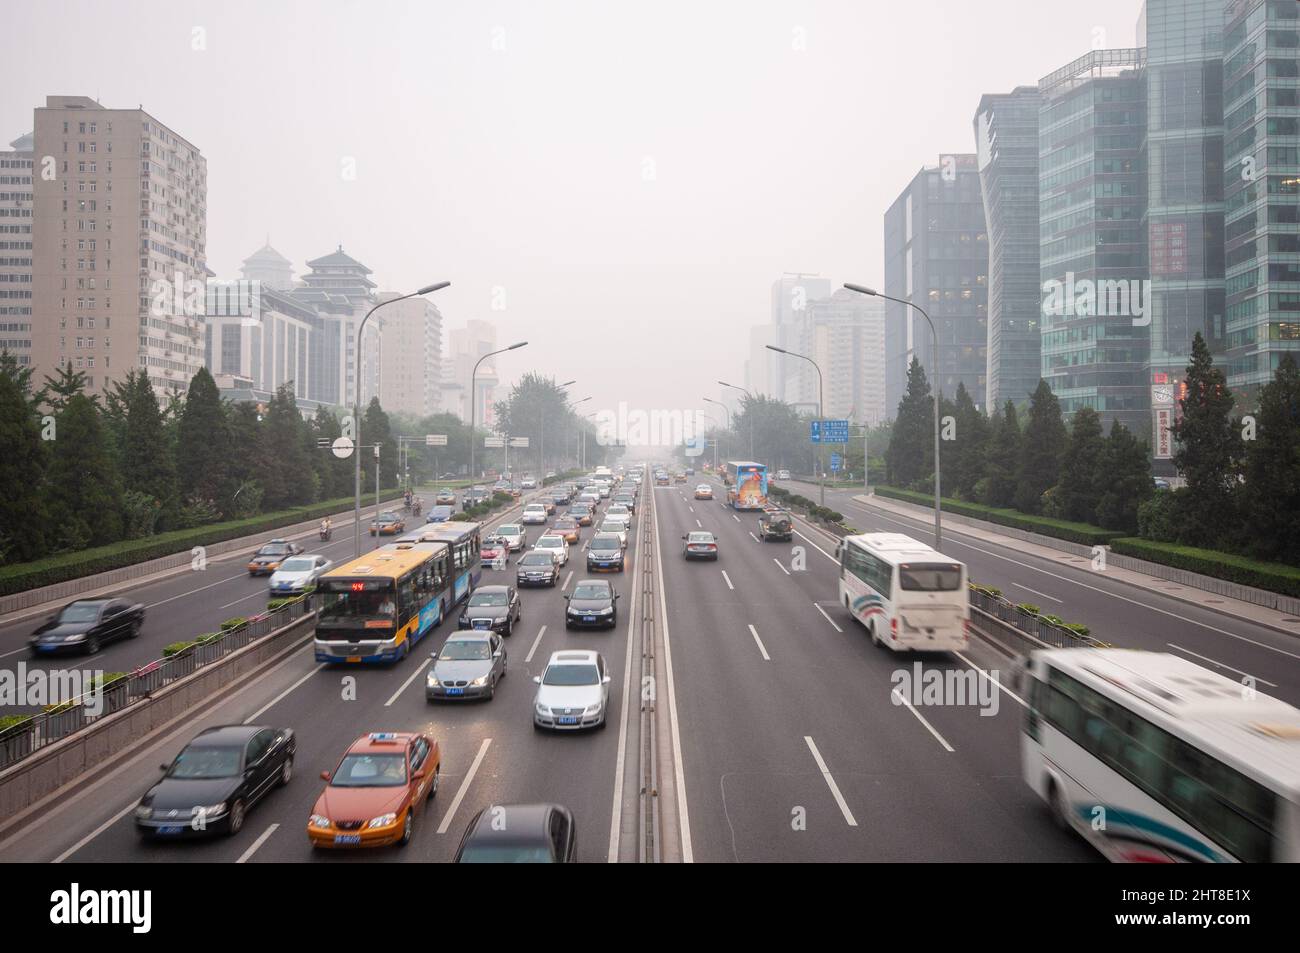 Beijing, China - 13 de agosto de 2010: La contaminación del aire envuelve edificios moden de oficinas que bordean la segunda carretera de circunvalación de Beijing. Foto de stock